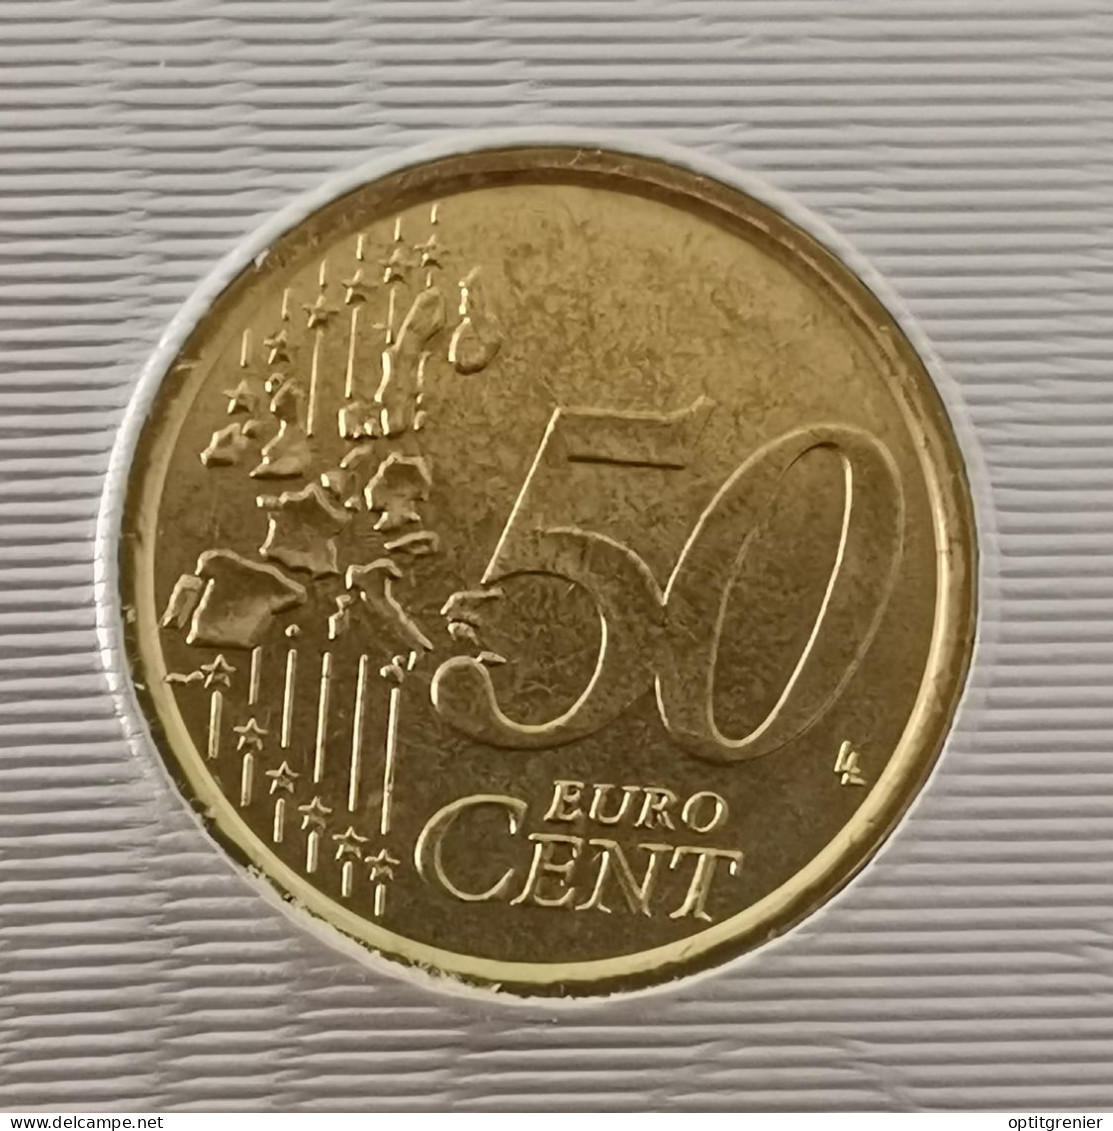 50 EURO CENT VATICAN 2006 / ISSUE DU COFFRET / VATICANO EURO CENTS (UN PEU "SALE") - Vatican